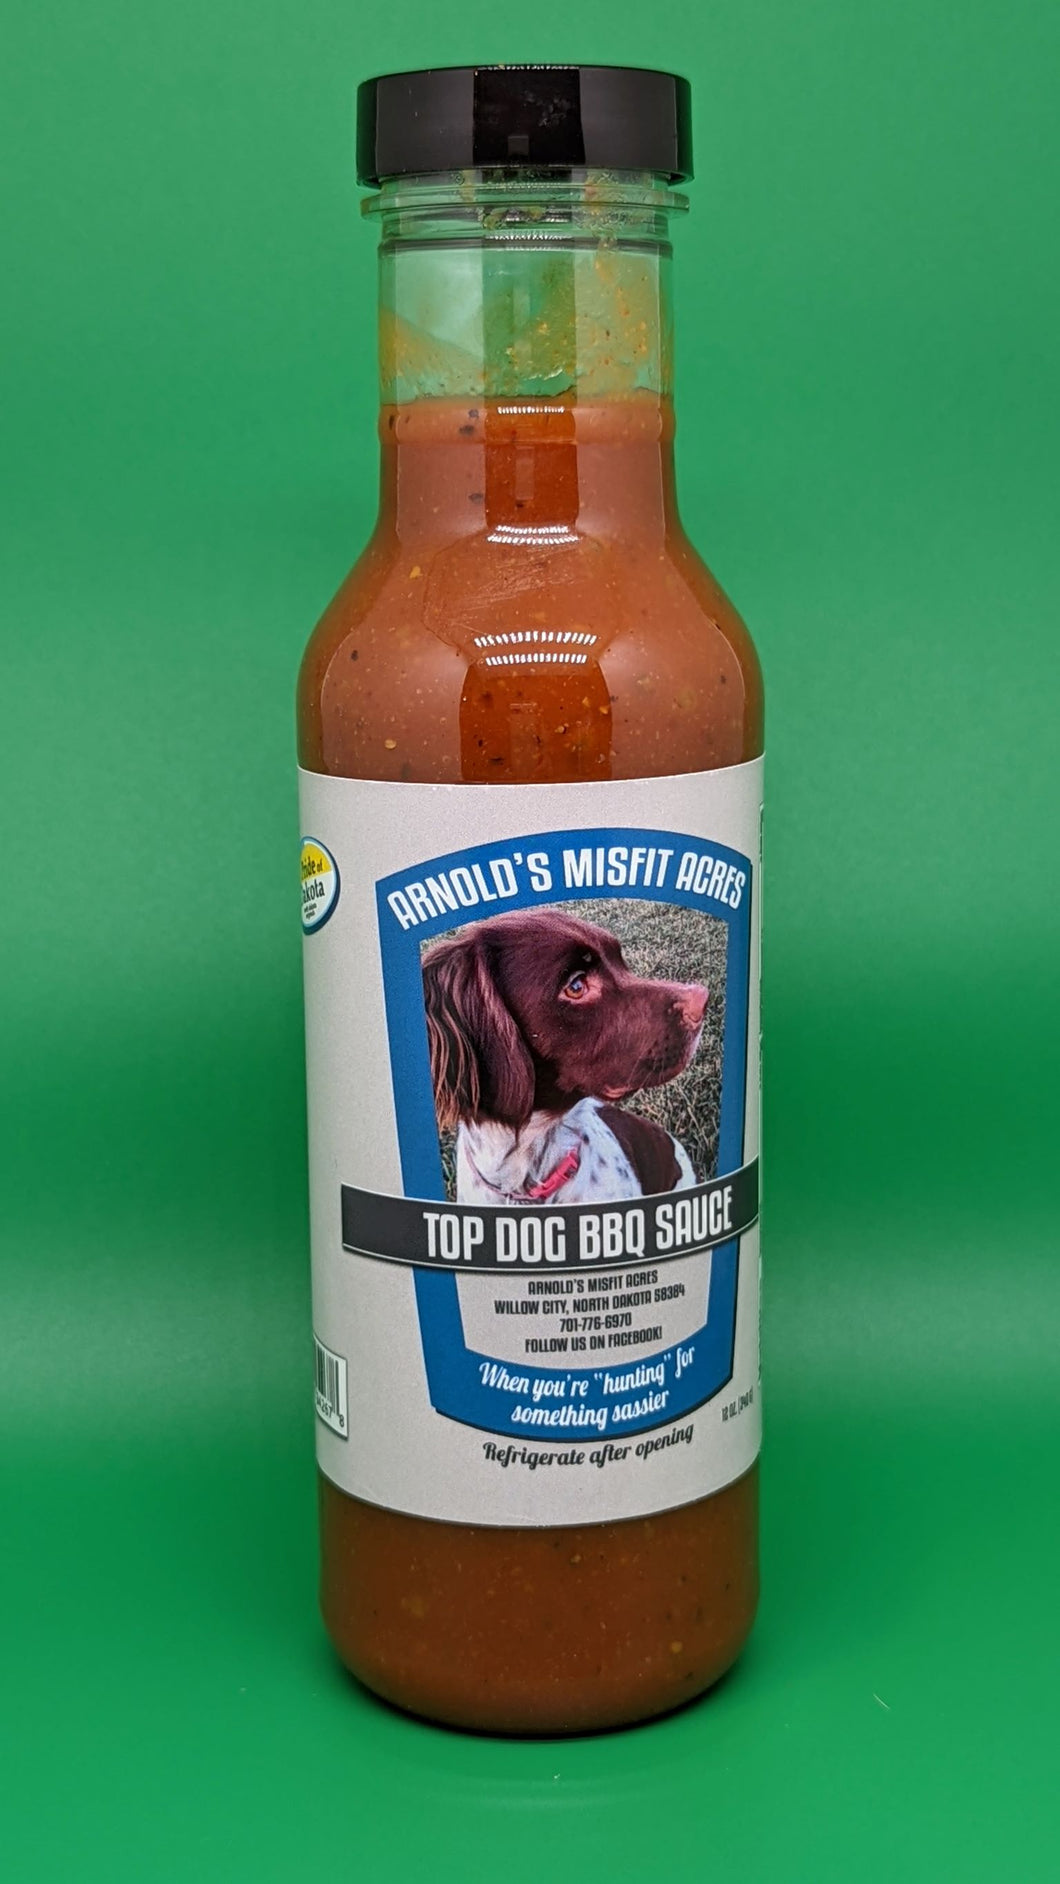 Top Dog BBQ sauce